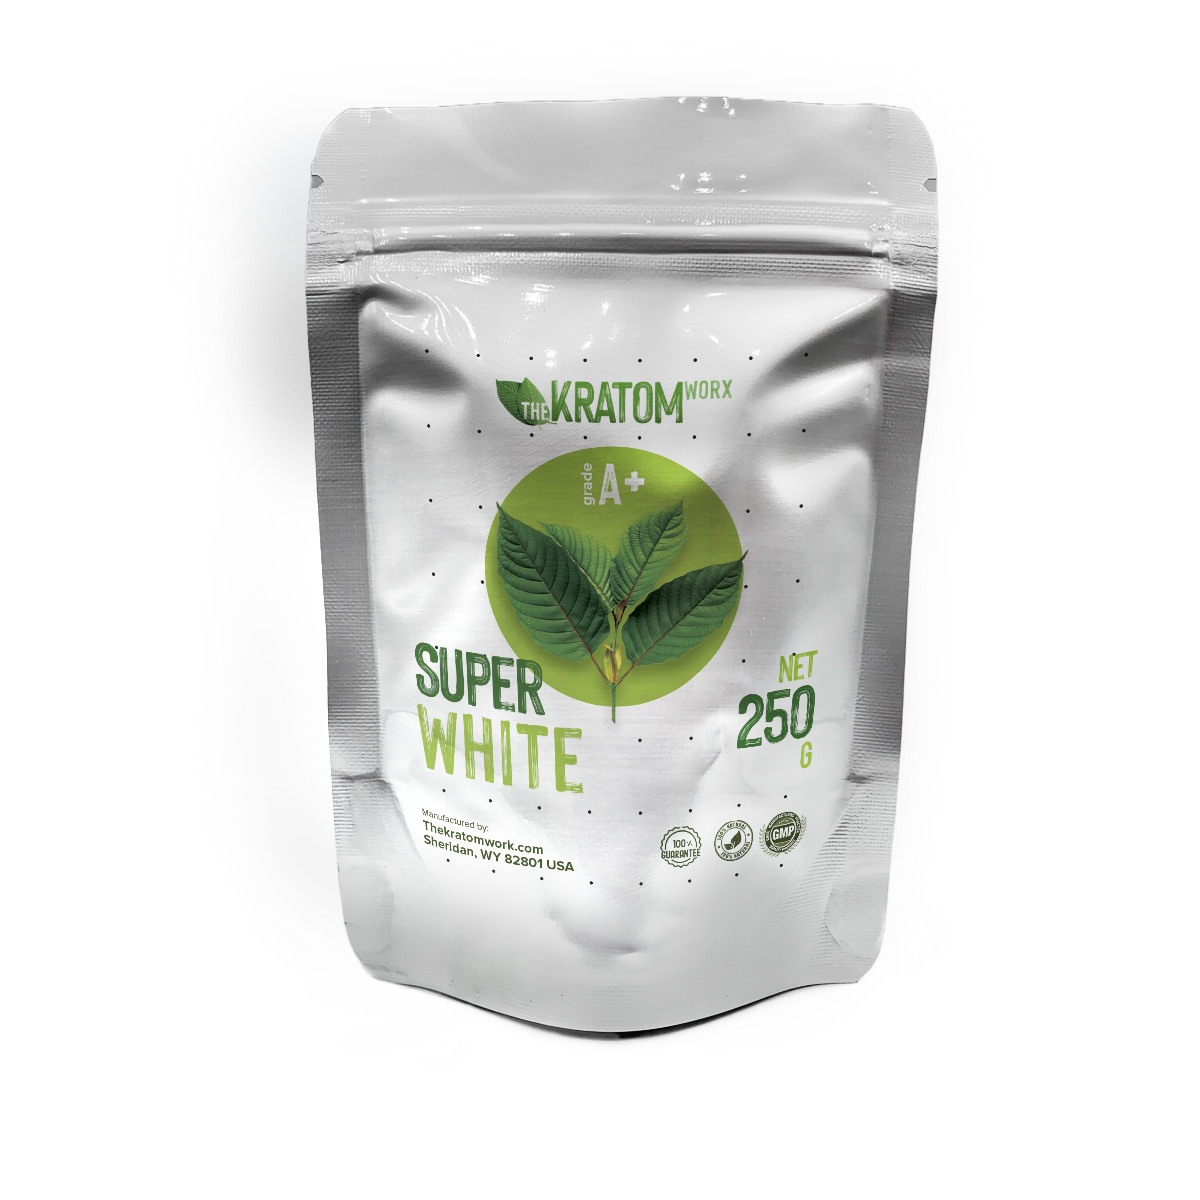 Super White Kratom - Buy High-Quality Super White Kratom Online